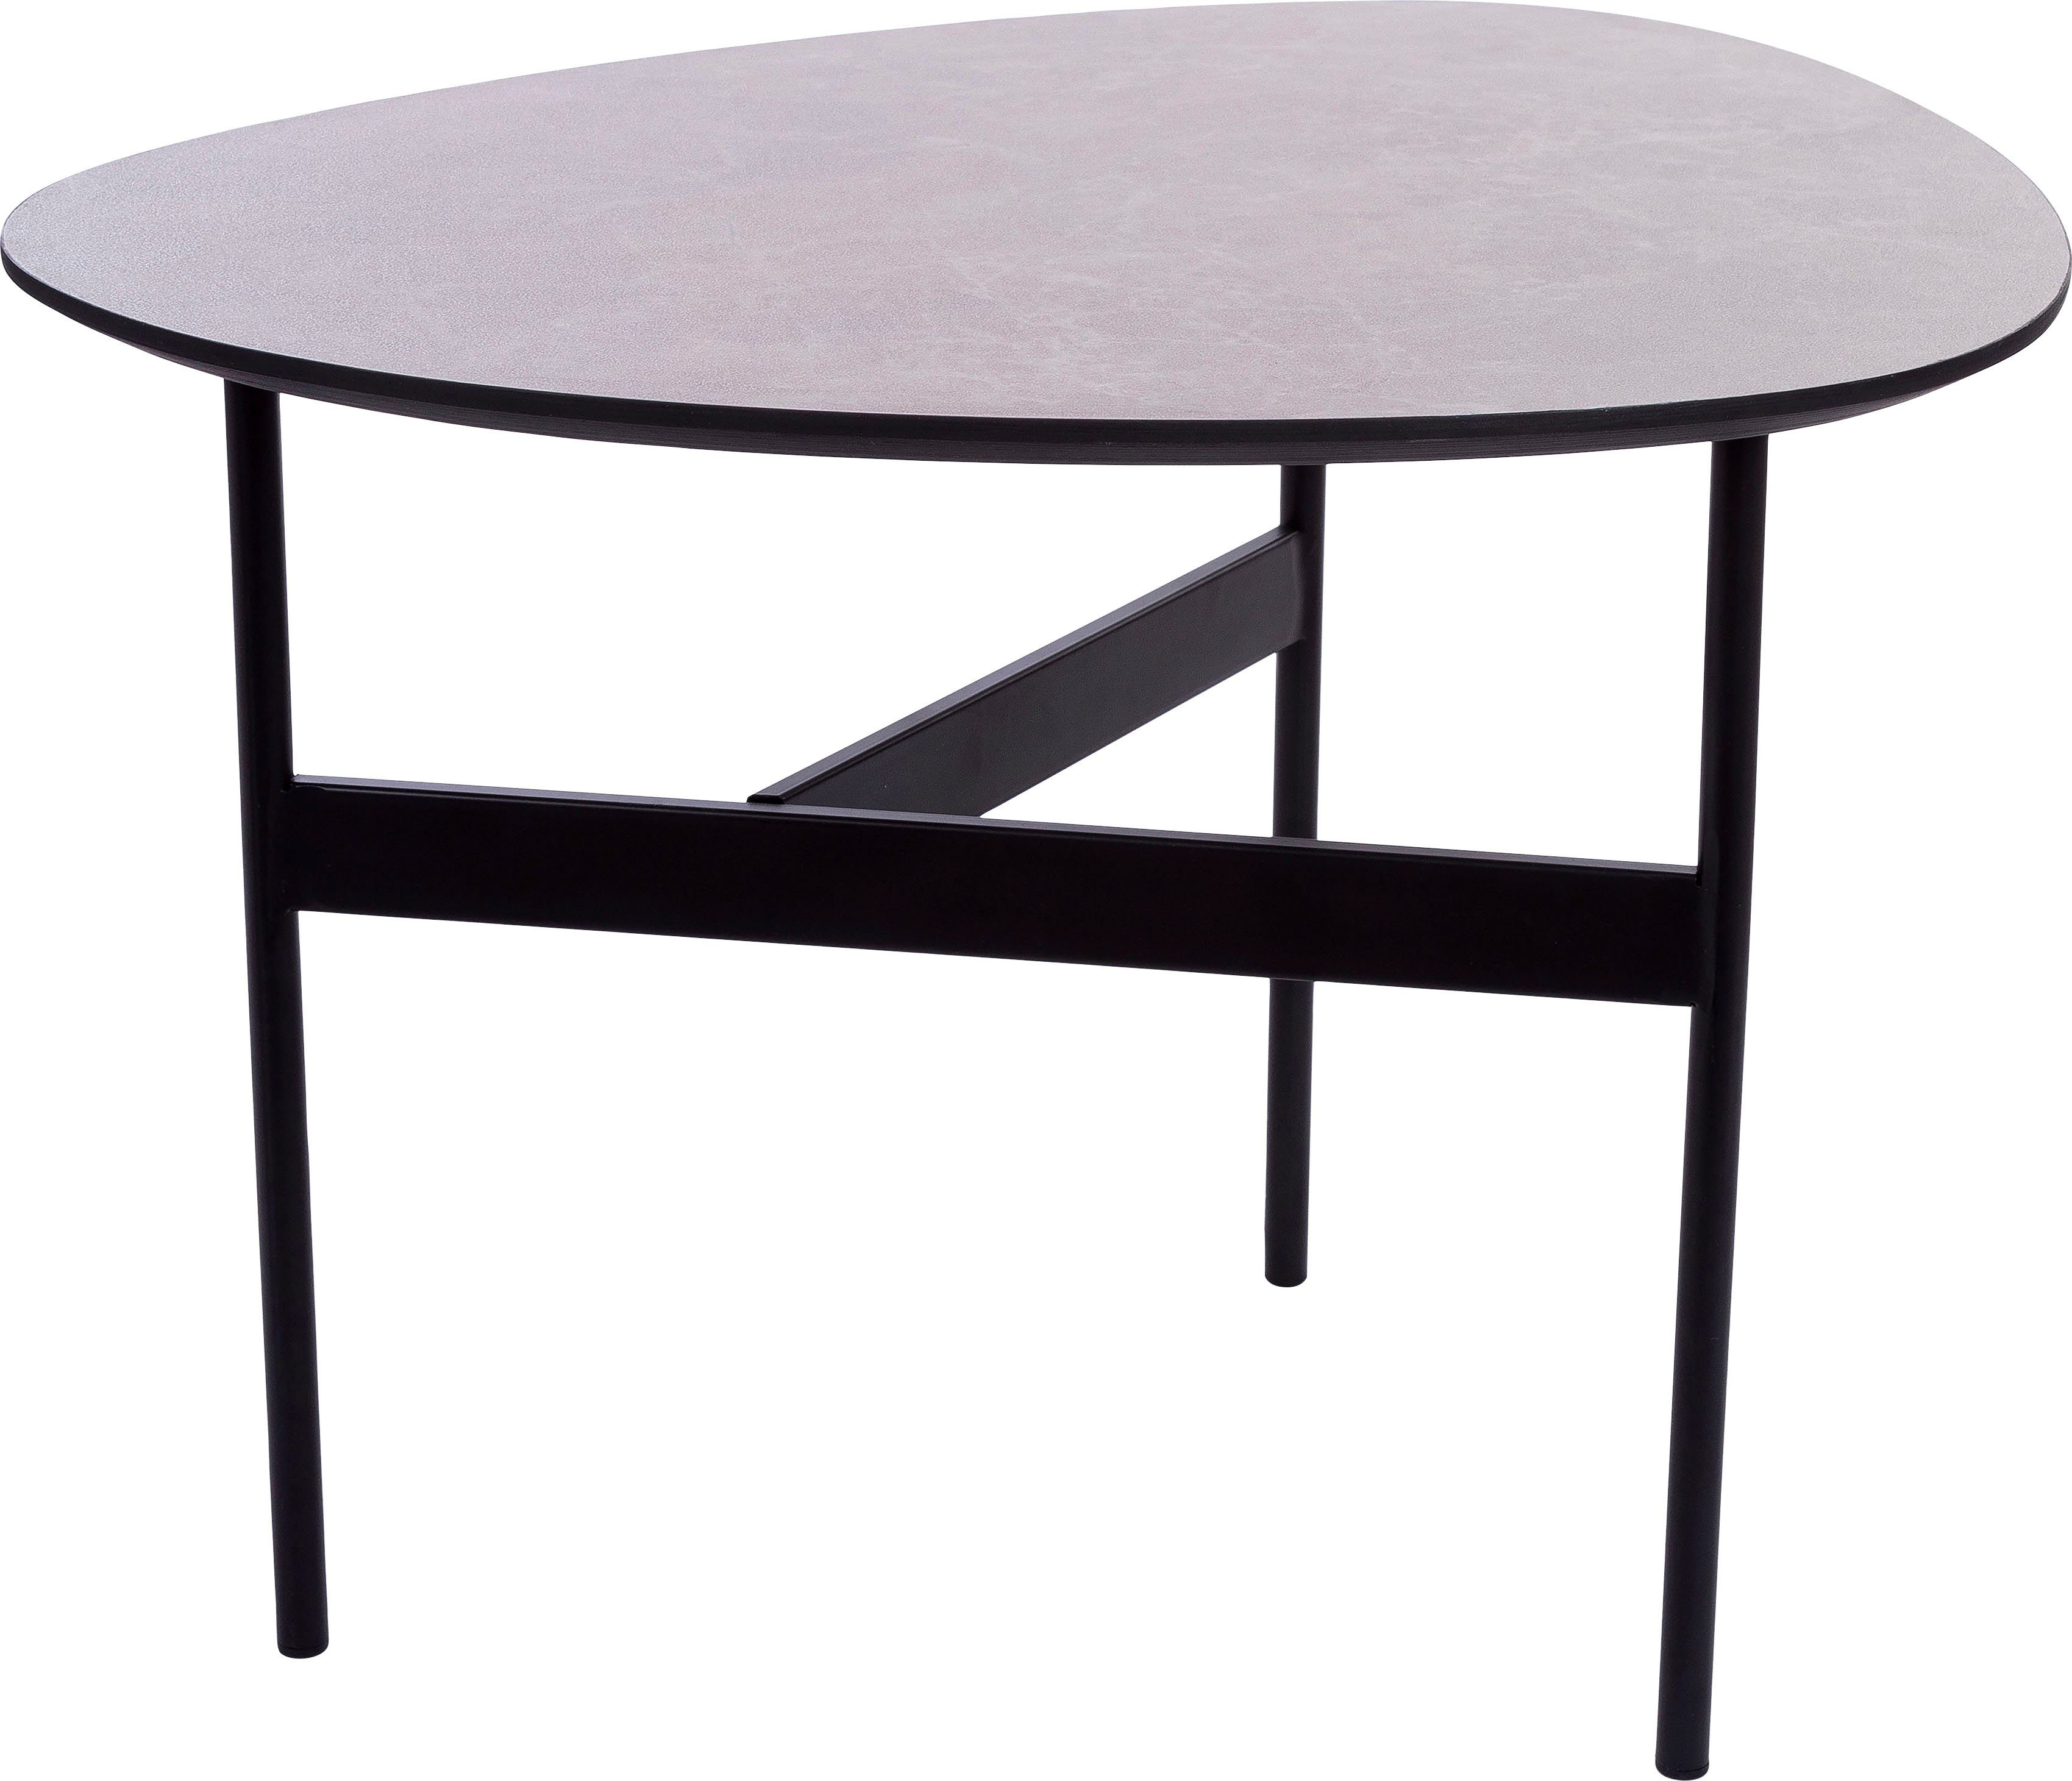 Home affaire Beistelltisch, Beistelltisch Oval, grau lackierter Tischplatte, 3 Bein Gestell | Ablagetische